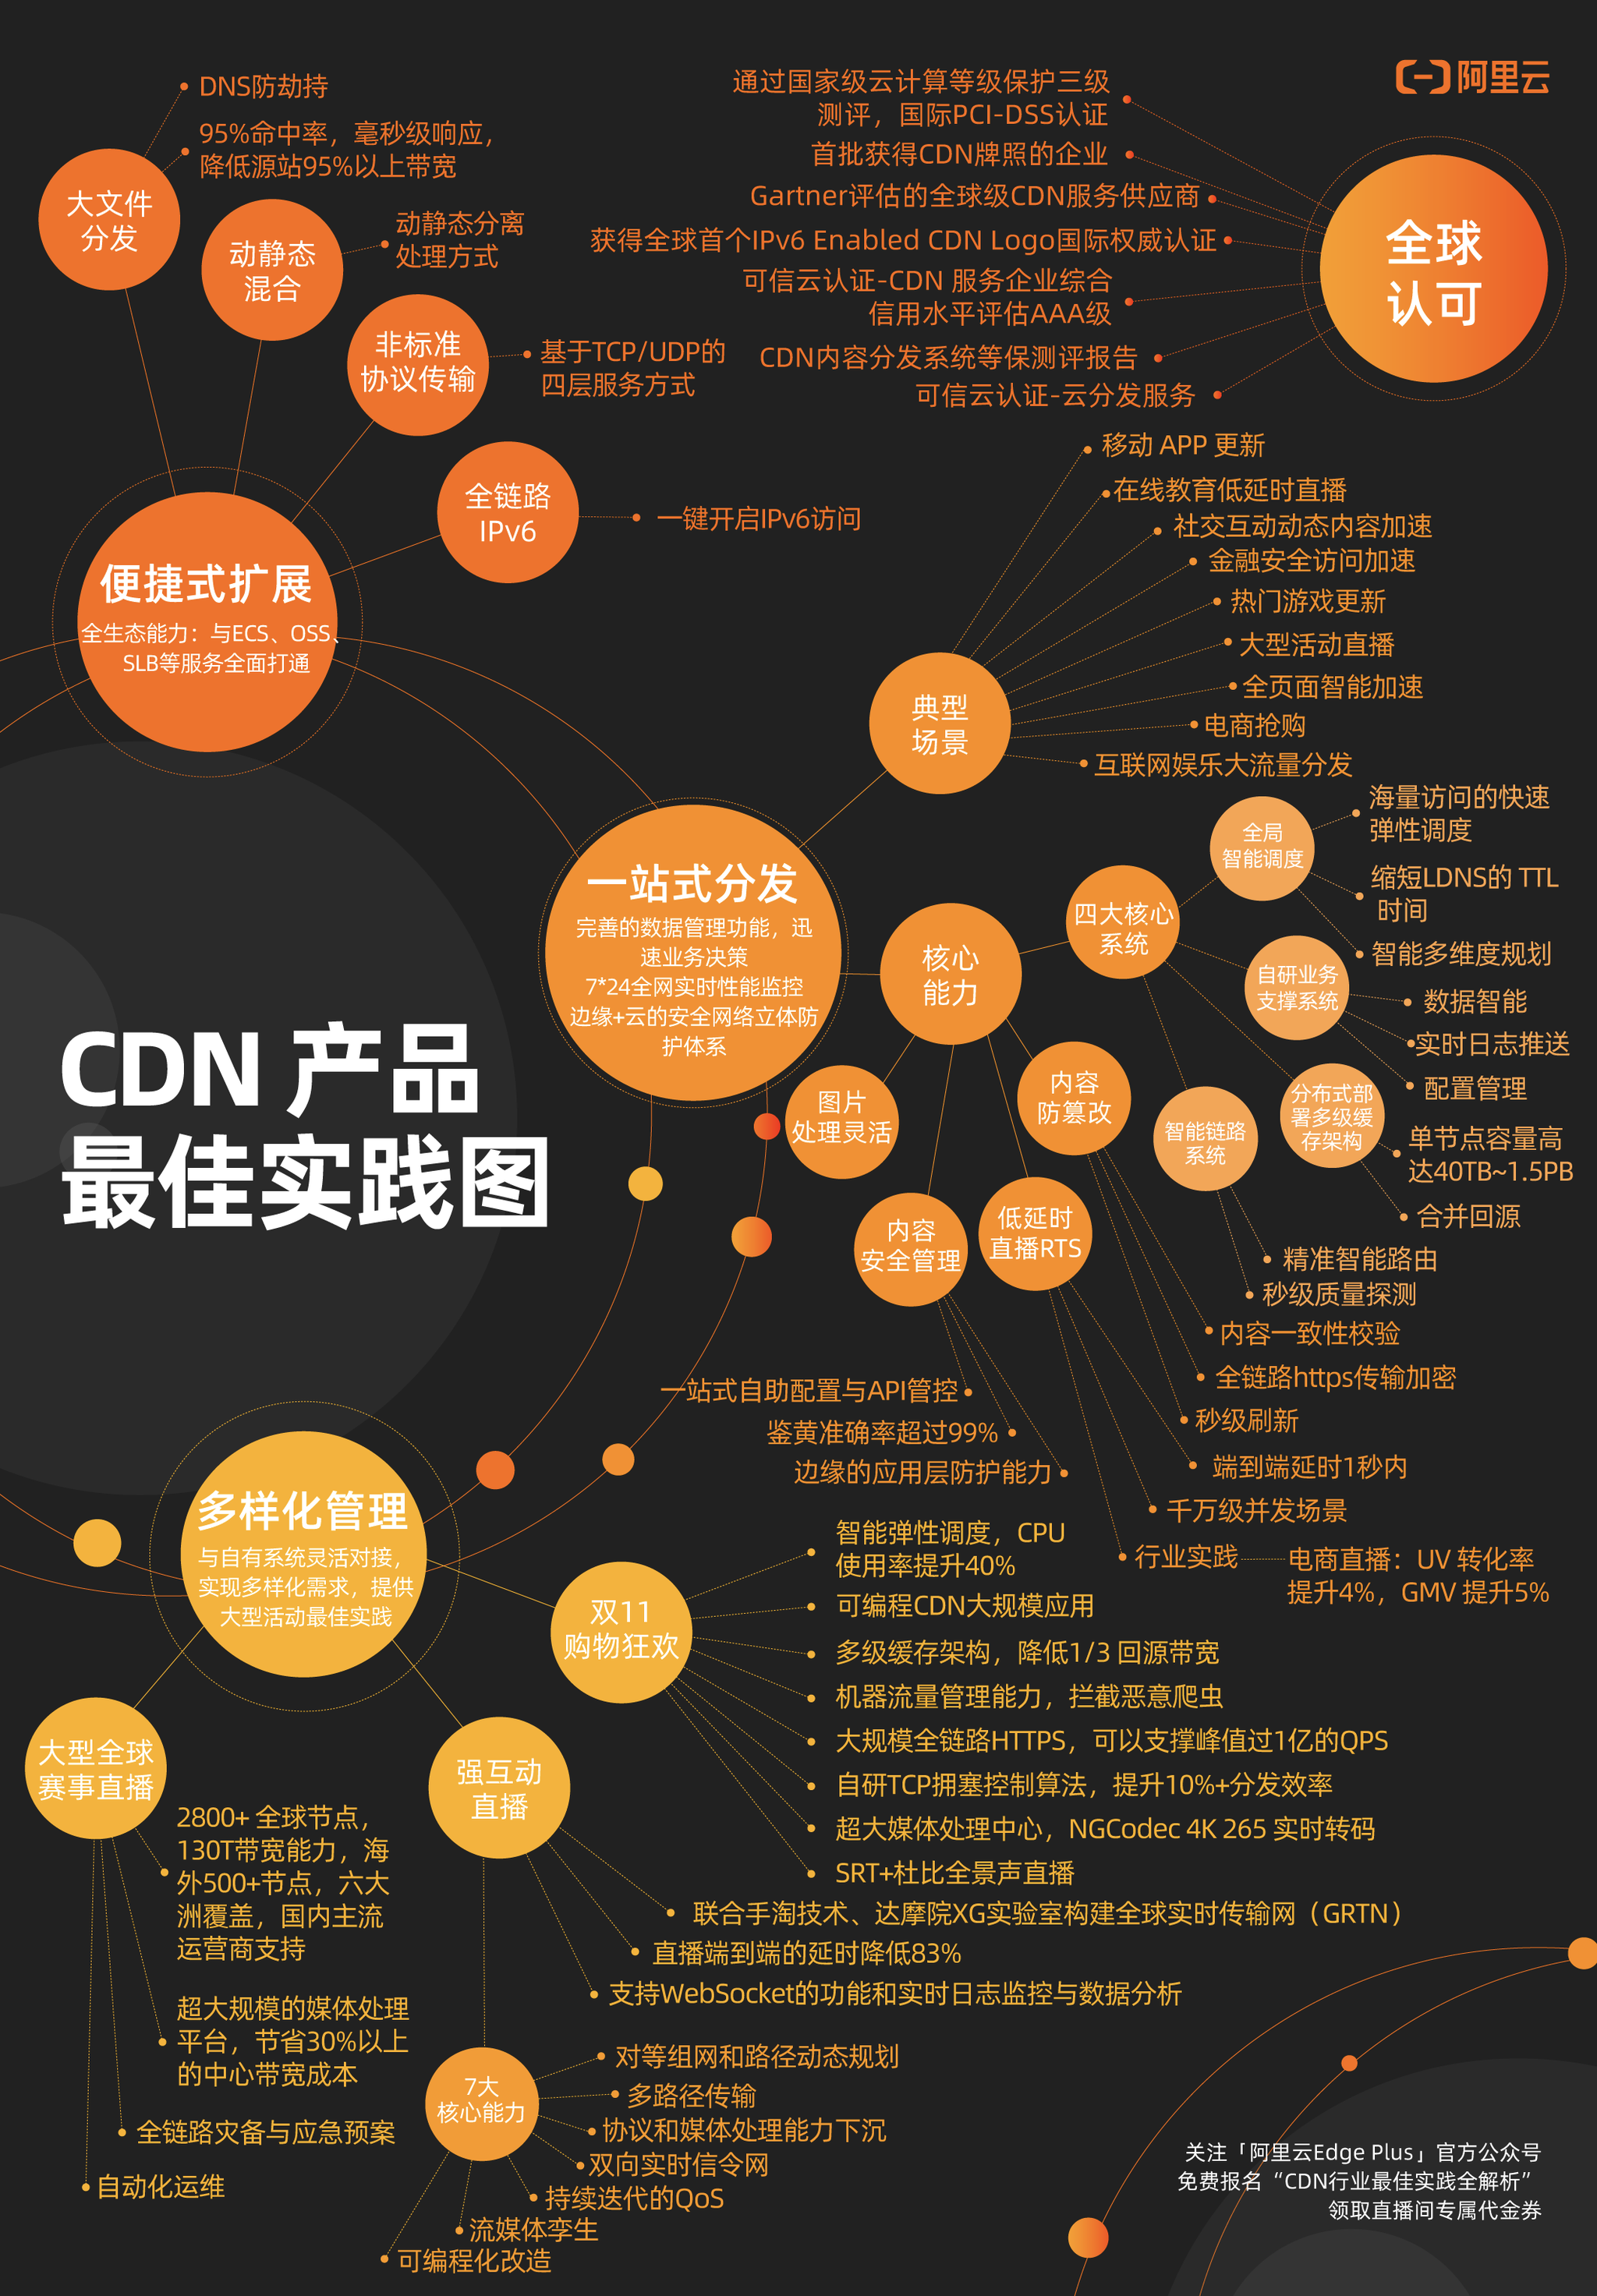 阿里云发布CDN产品最佳实践图，首次全面解析行业应用